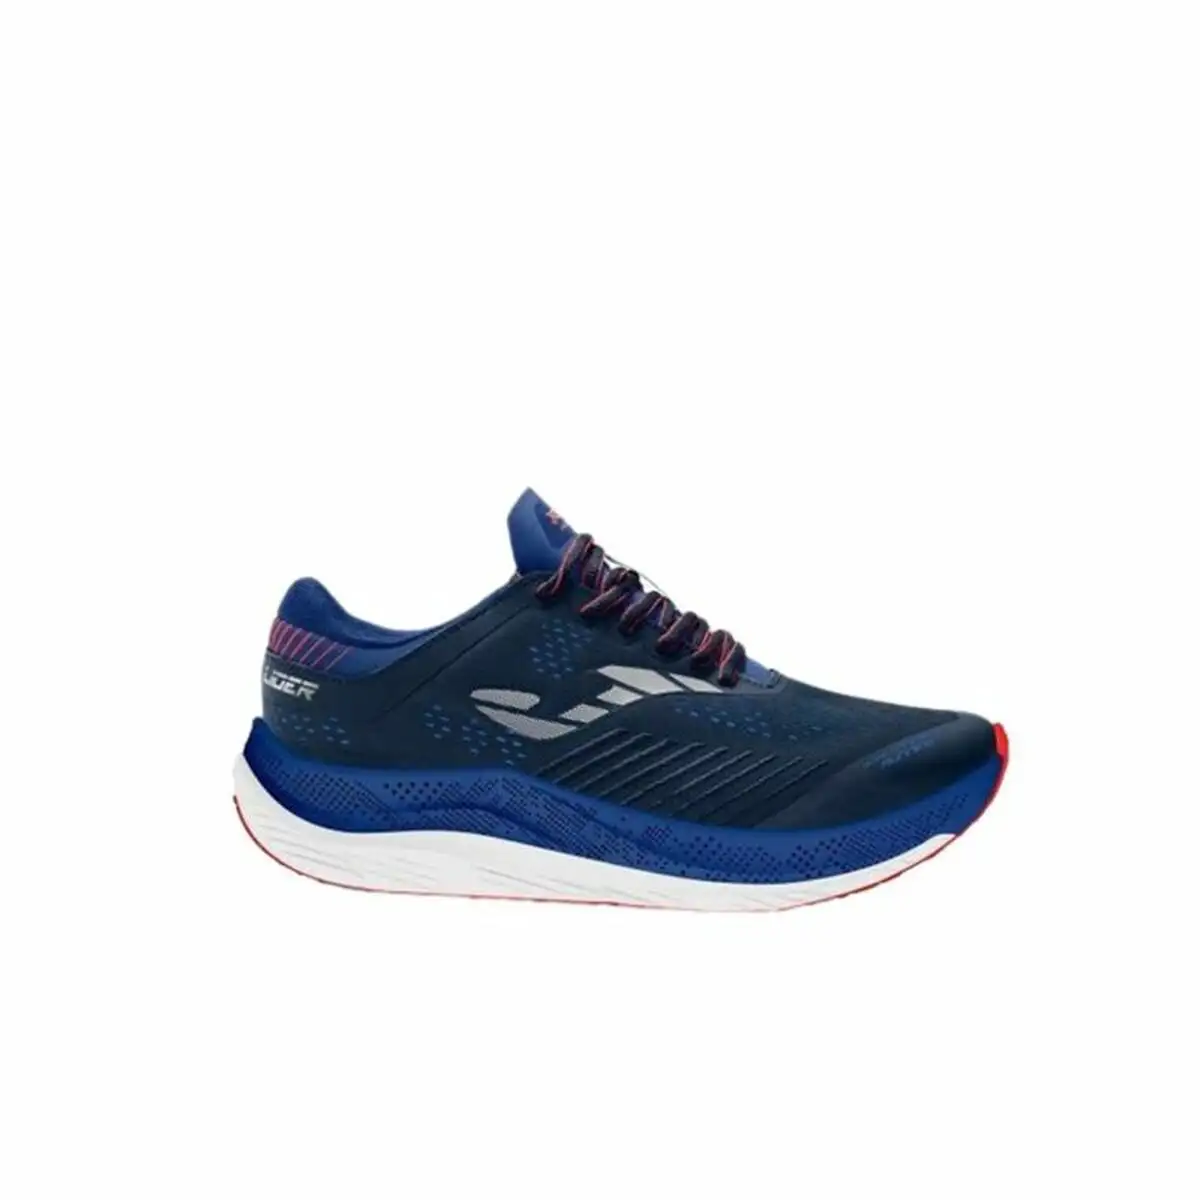 Chaussures de running pour adultes joma sport r lider 2303 bleu homme_4482. DIAYTAR SENEGAL - L'Art du Shopping Distinctif. Naviguez à travers notre gamme soigneusement sélectionnée et choisissez des produits qui définissent votre mode de vie.